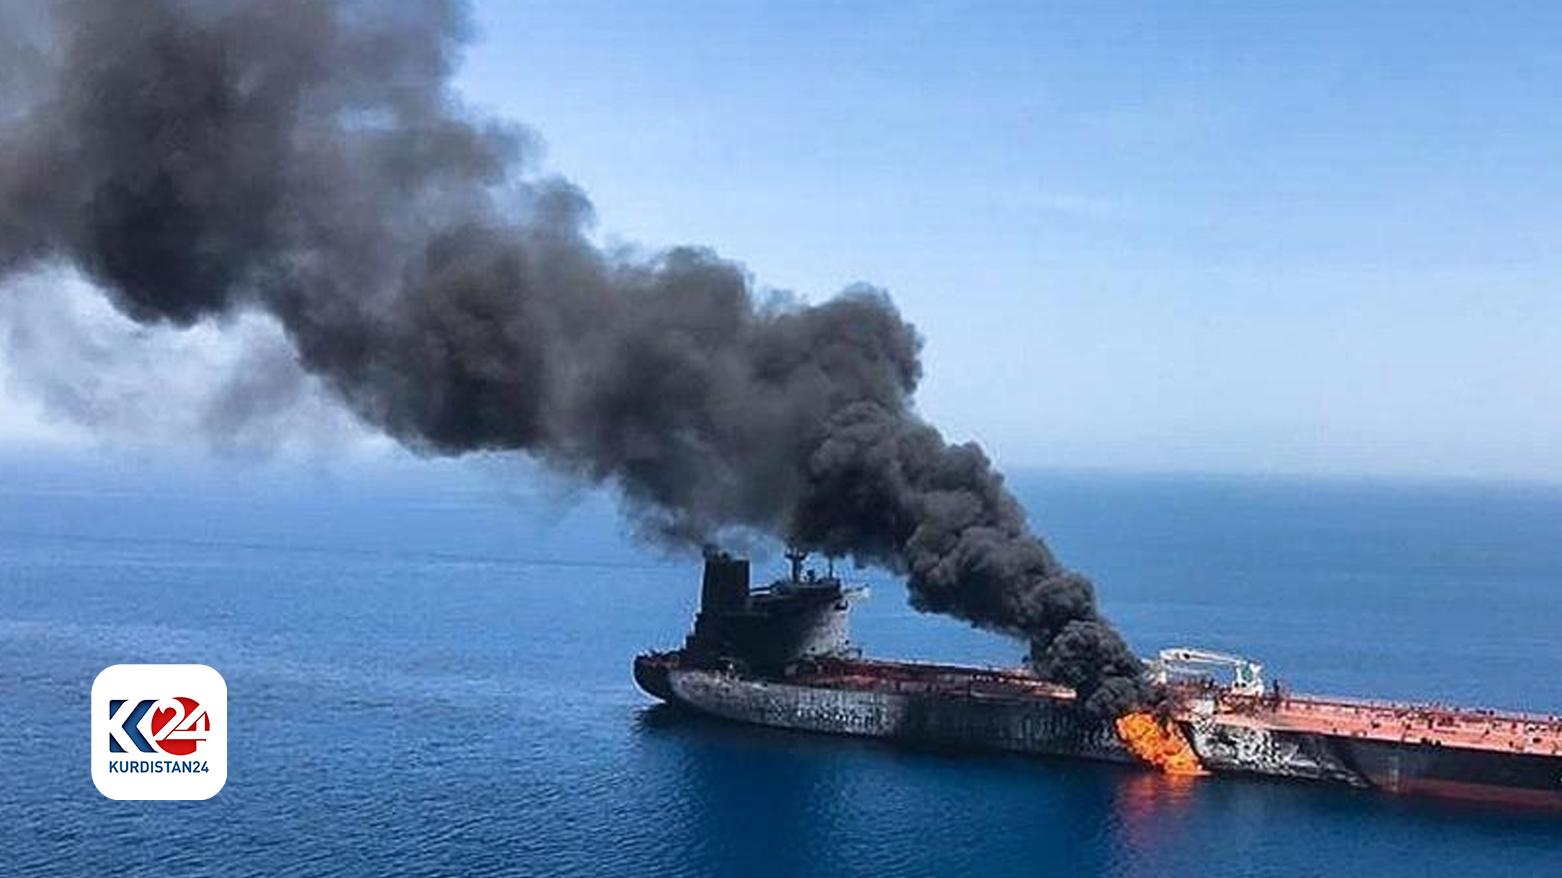 هجوم صاروخي يتسبب بأضرار بسيطة في سفينة قبالة السواحل اليمنية